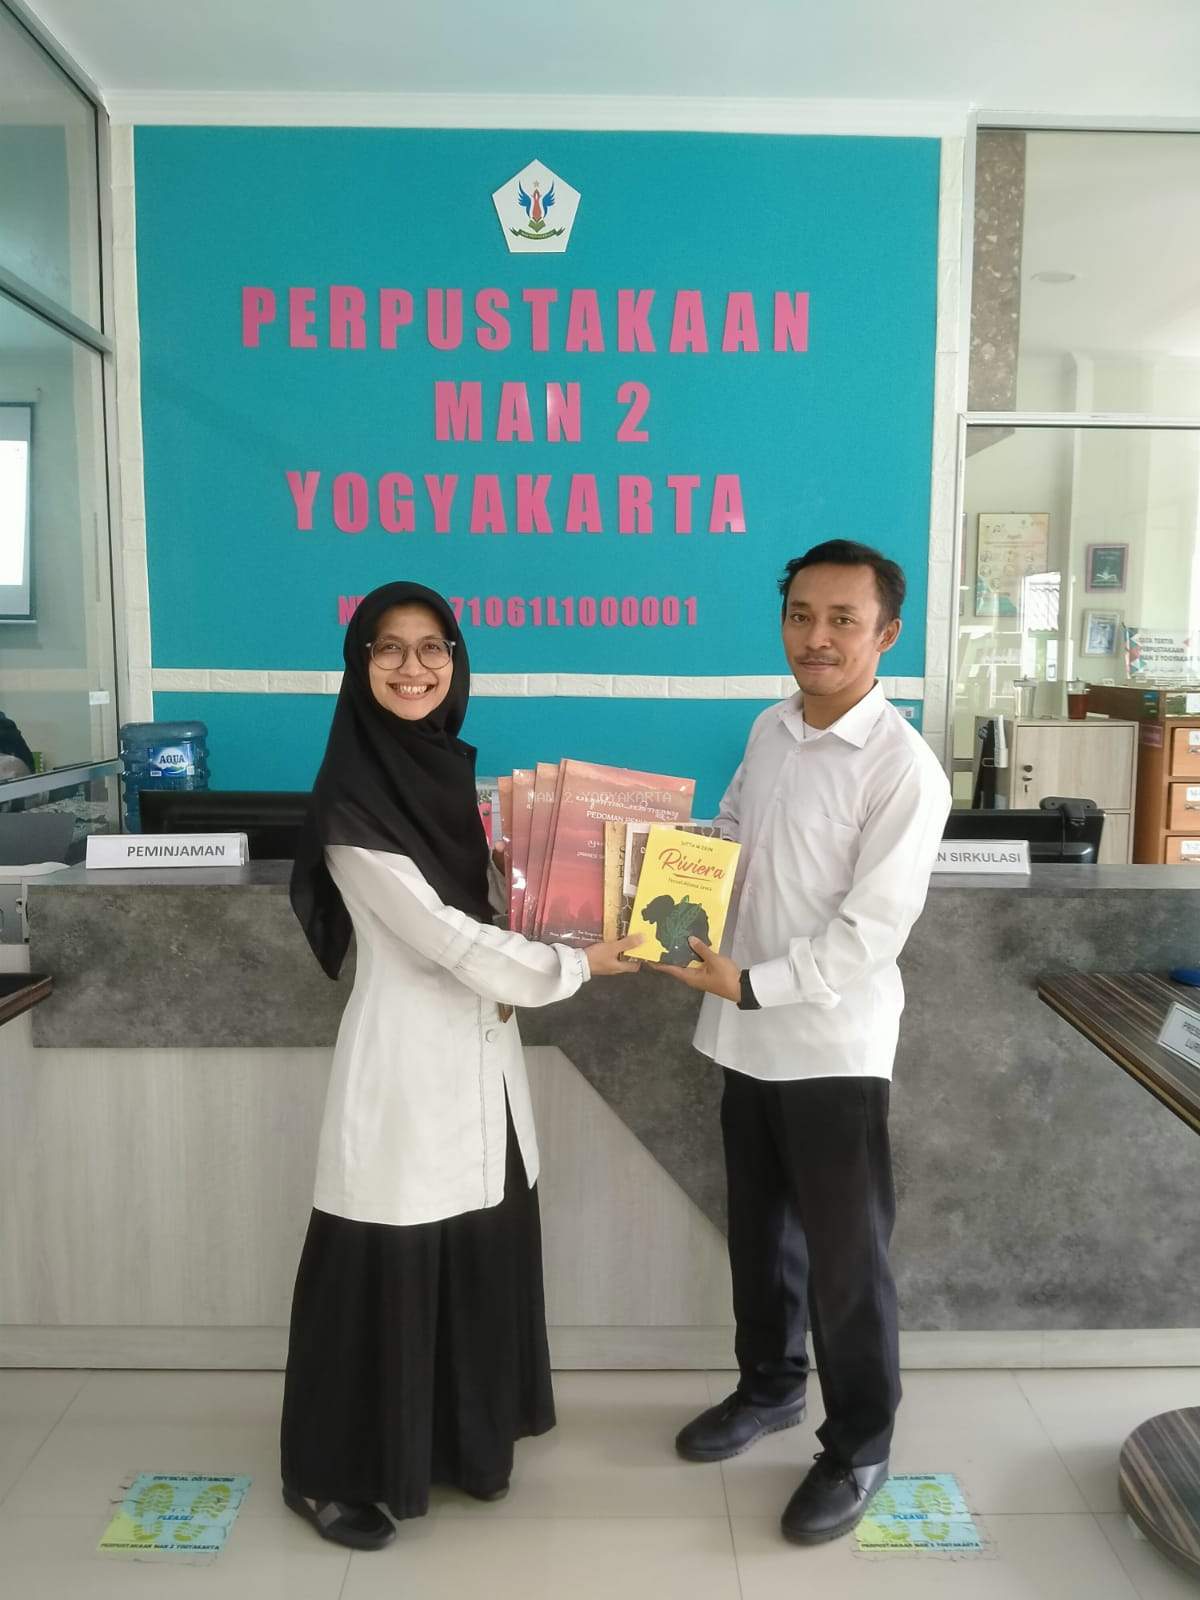 Panitia Konggres Bahasa Jawa Menghibahkan Buku Bahasa jawa ke Perpustakaan MAN 2 Yogyakarta